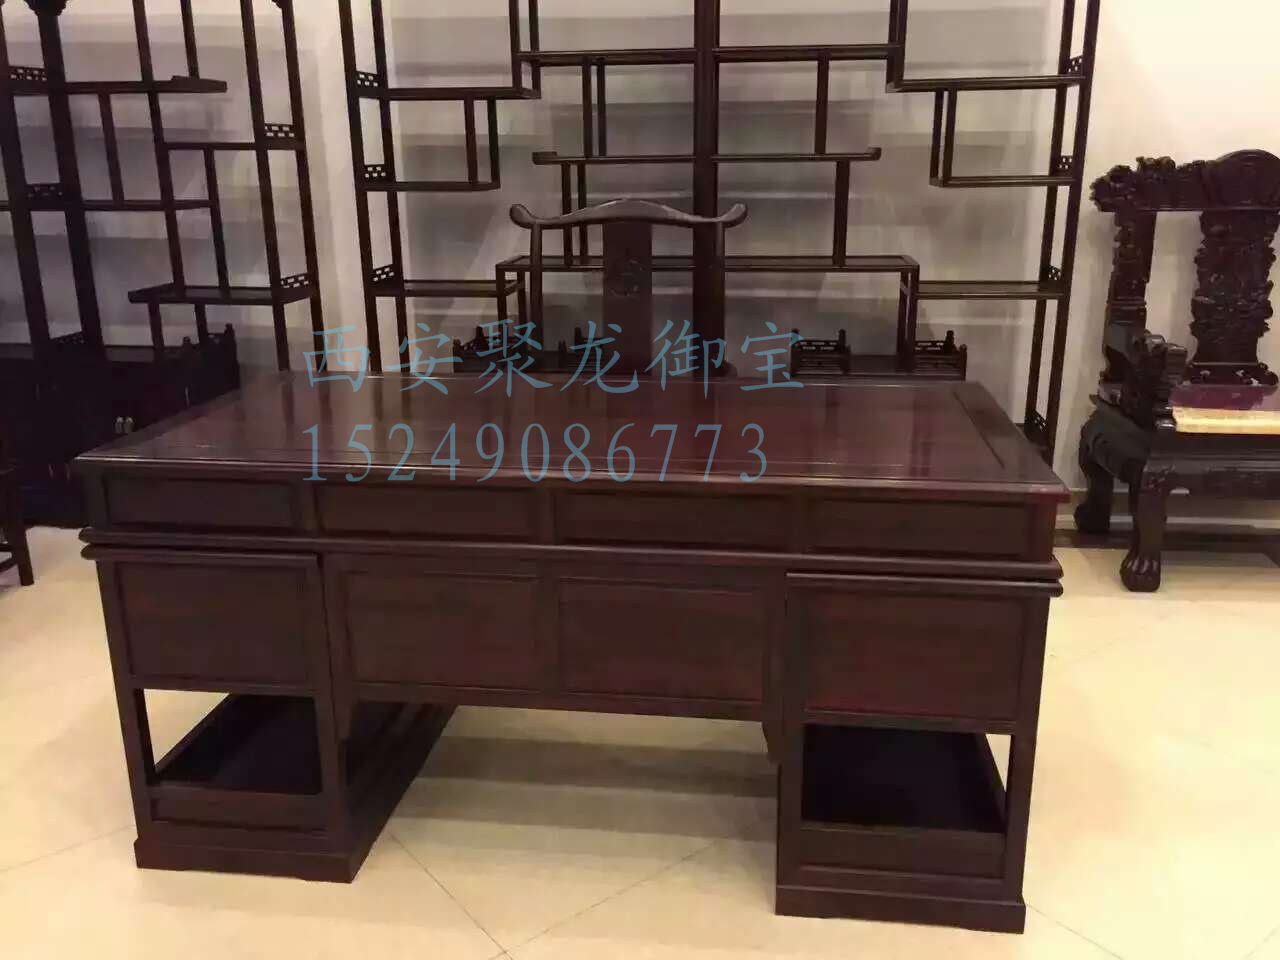 西安古办公桌尺寸价格-实木办公桌图片样式-红木办公桌厂家报价图片